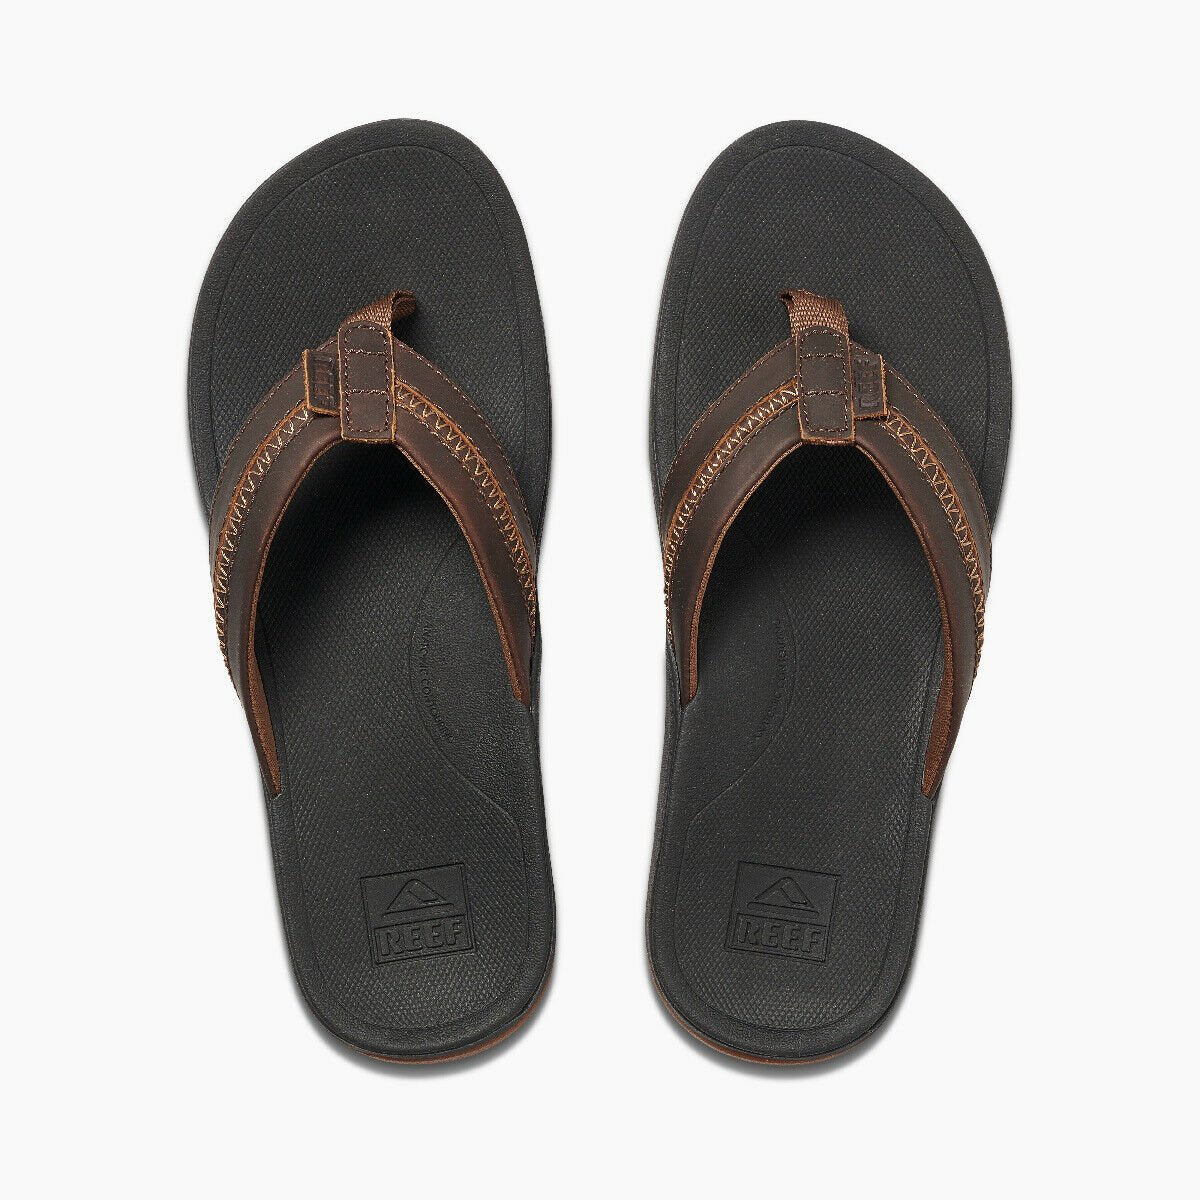 Reef Men's Leather Ortho-Coast Flip Flops - Black/Brown